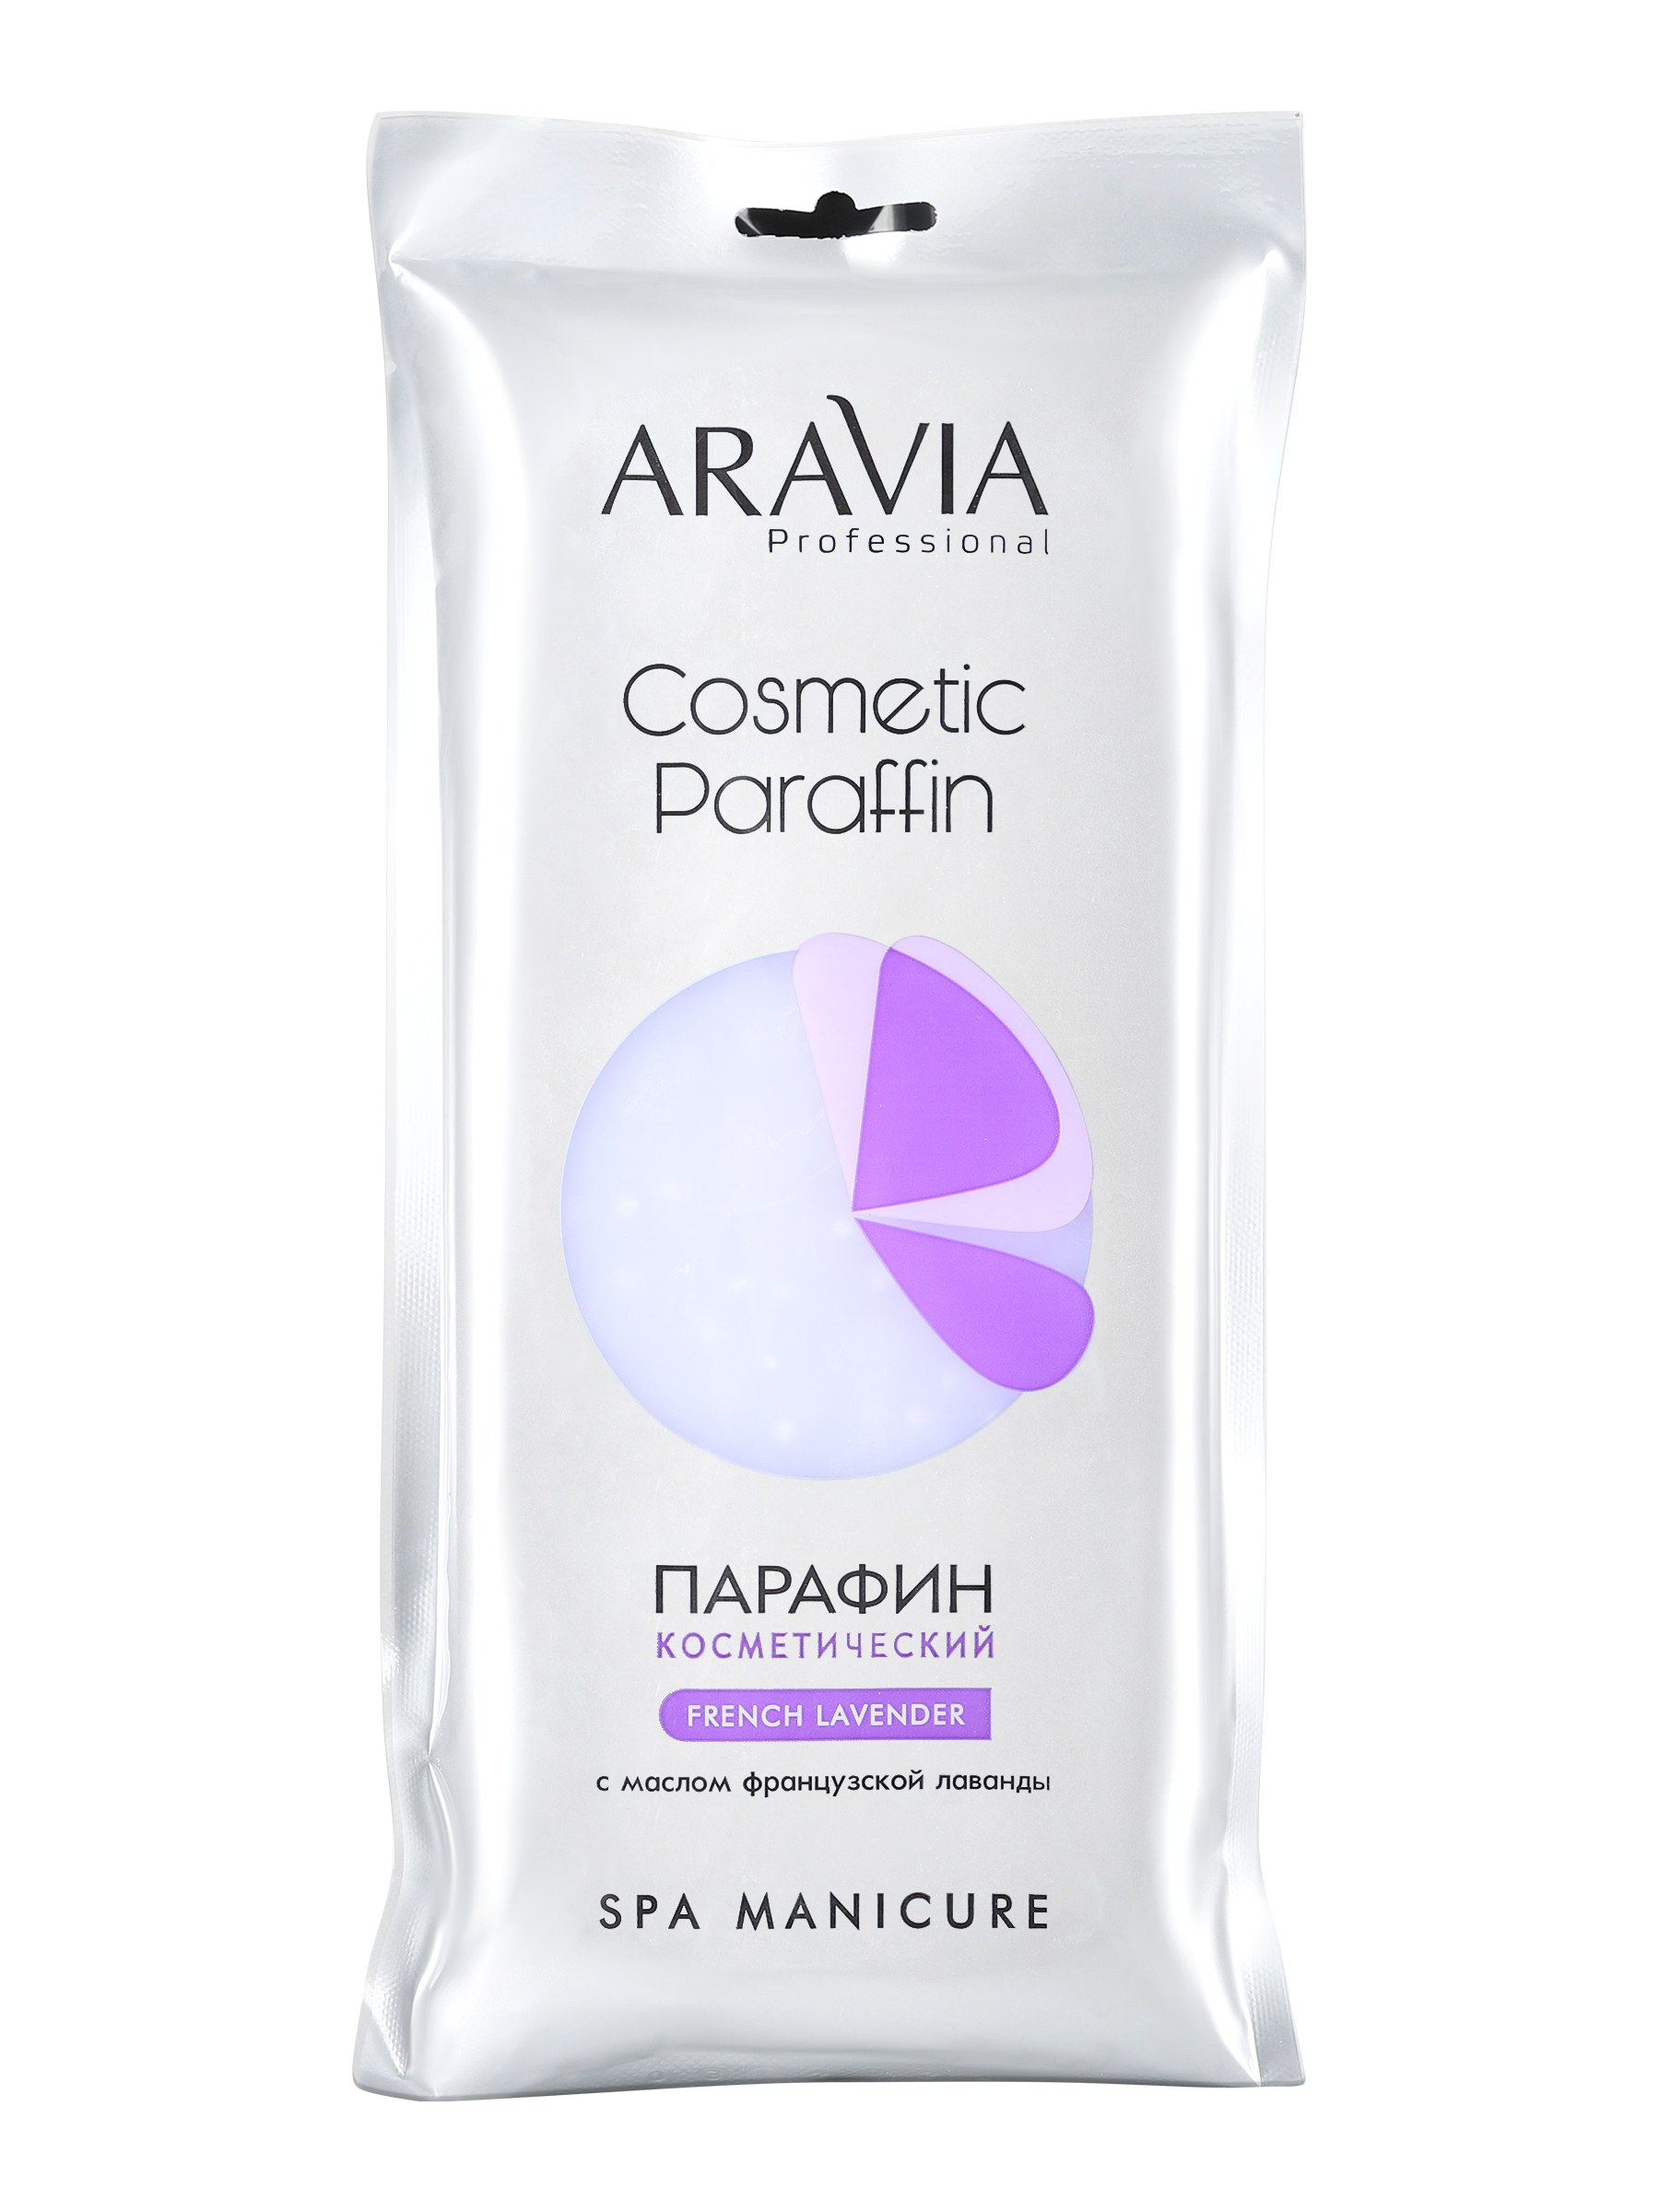 Парафин косметический Aravia Professional French Lavender, 500 г крем парафин aravia professional french lavender для парафинотерапии 300 мл